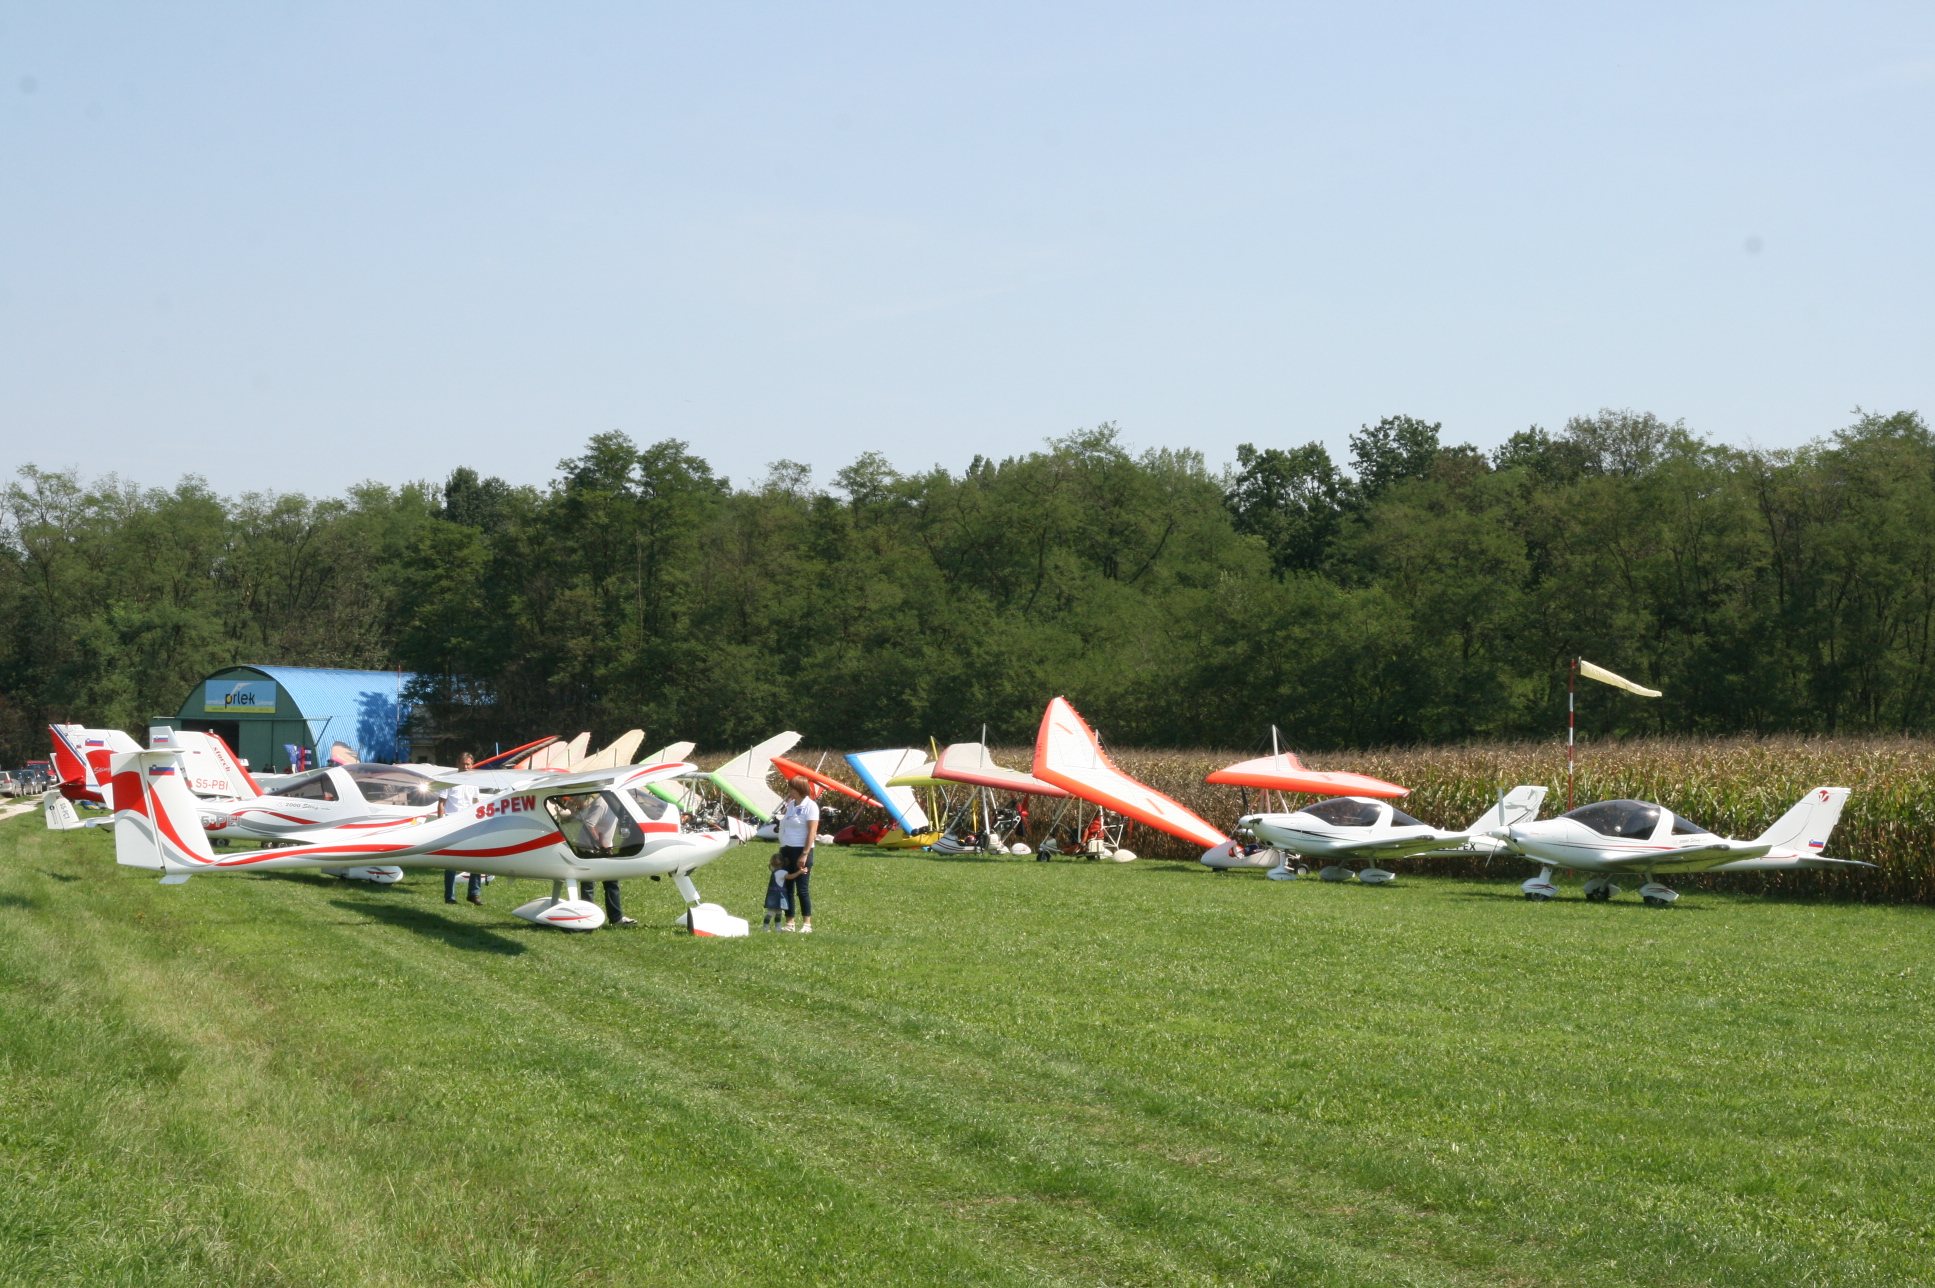  Aeroklub Prlek je praznoval 20-letnico delovanja.